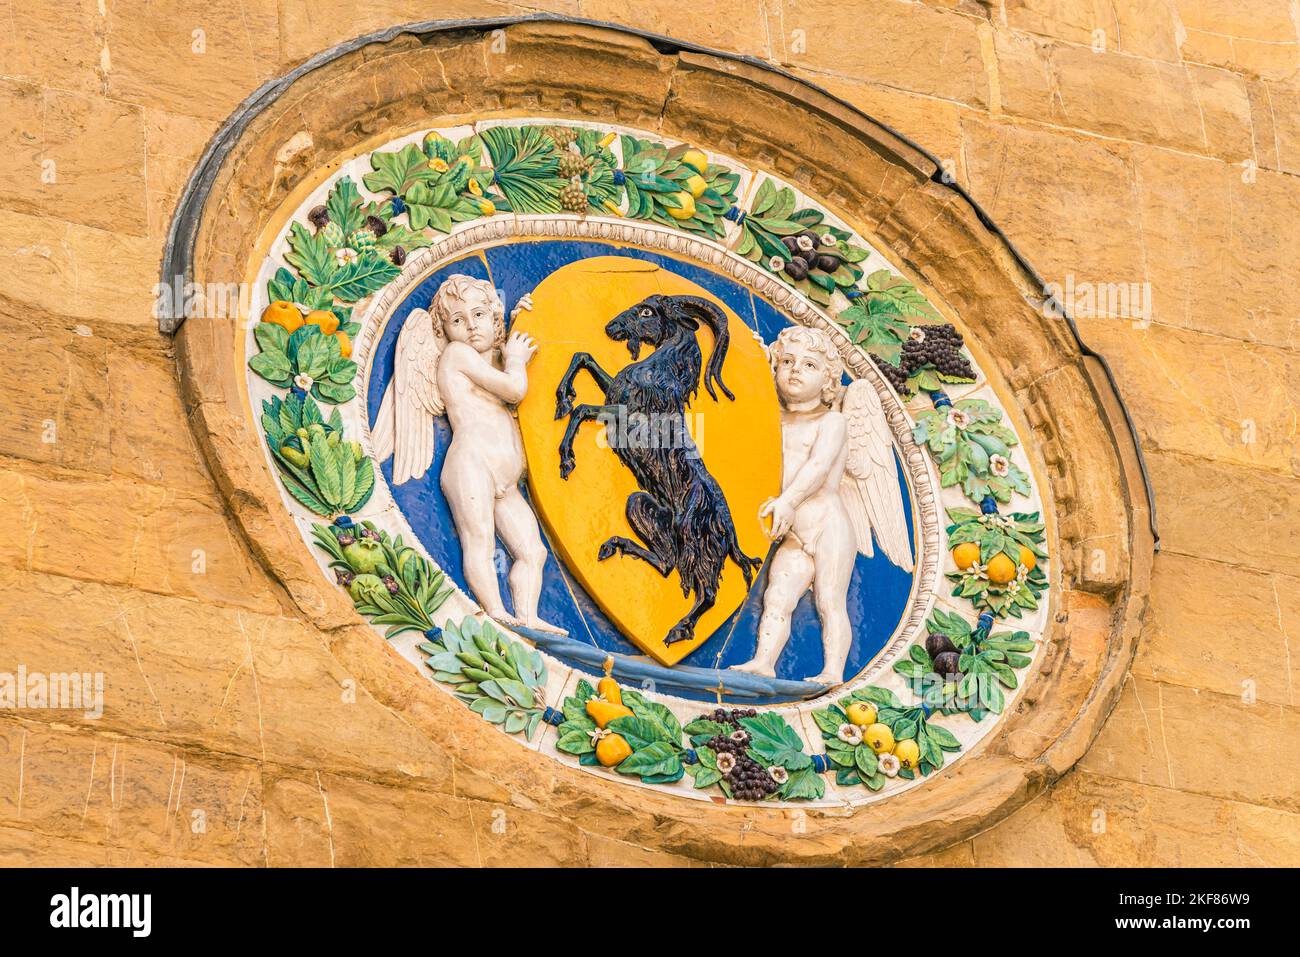 Tondo avec les armoiries de l'Arte dei Beccai, église d'Orsanmichele, Florence, Italie, Europe Banque D'Images